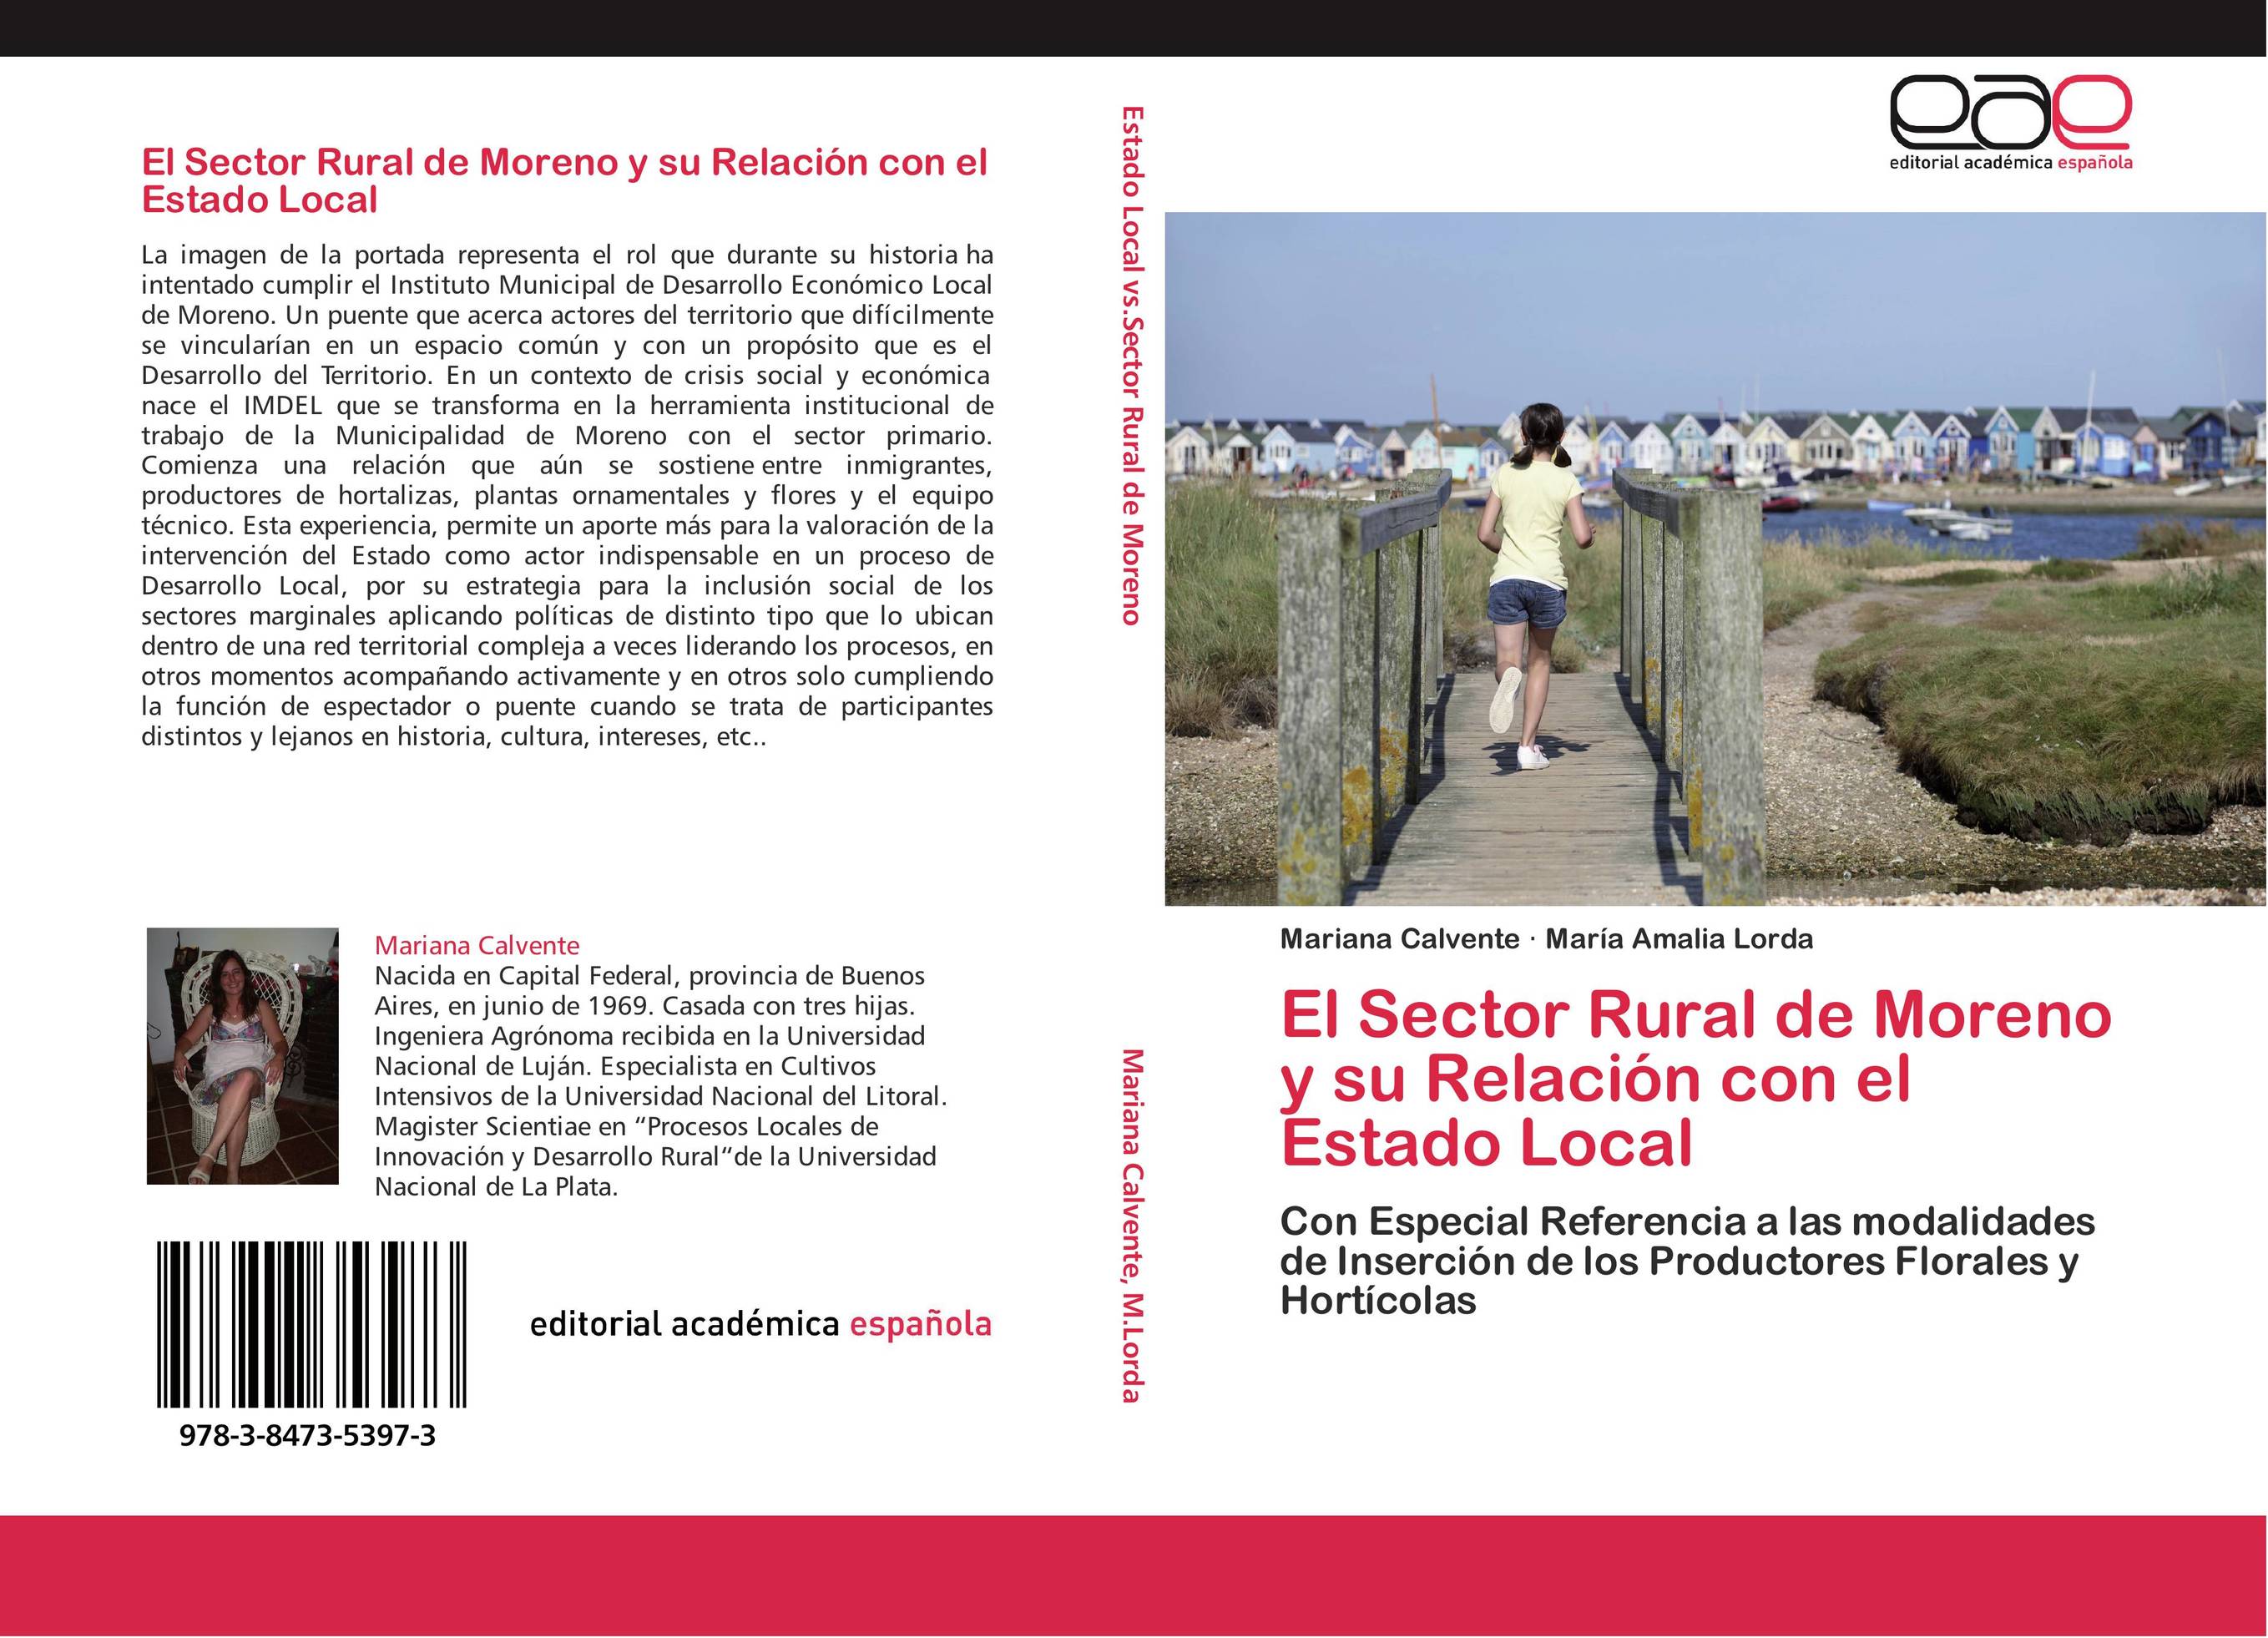 El Sector Rural de Moreno y su Relación con el Estado Local